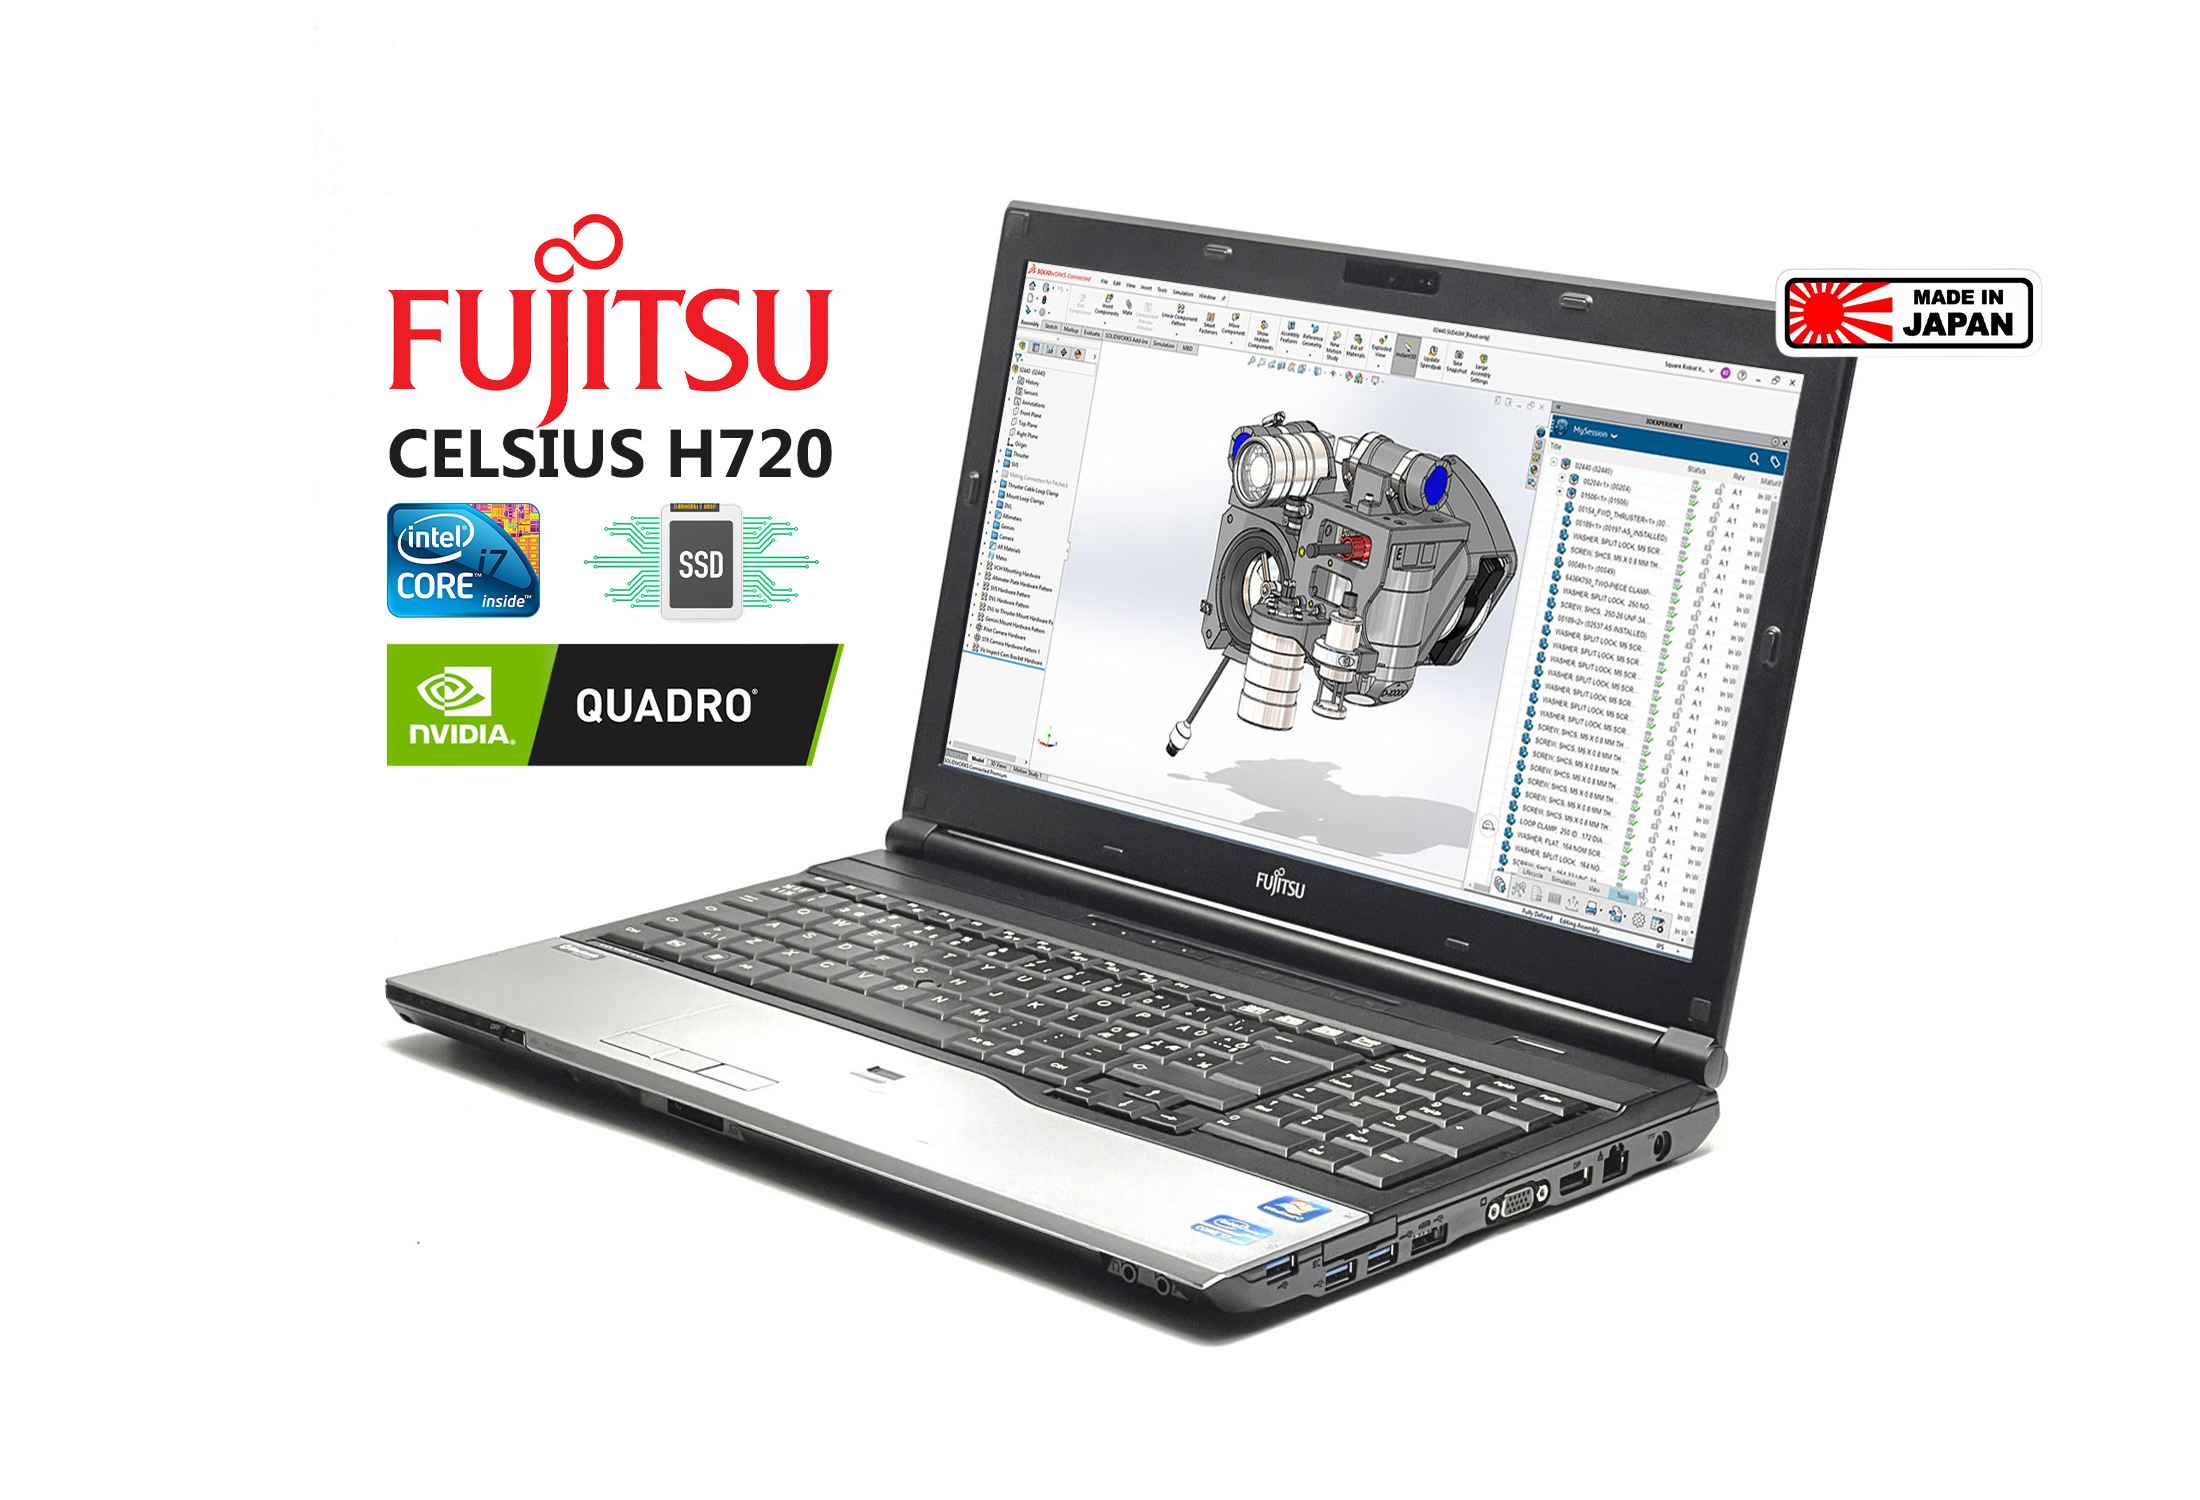 Fujitsu Celsius H720 i7-3720QM SSD FHD Quadro K1000M Camera-fWoxh.jpeg